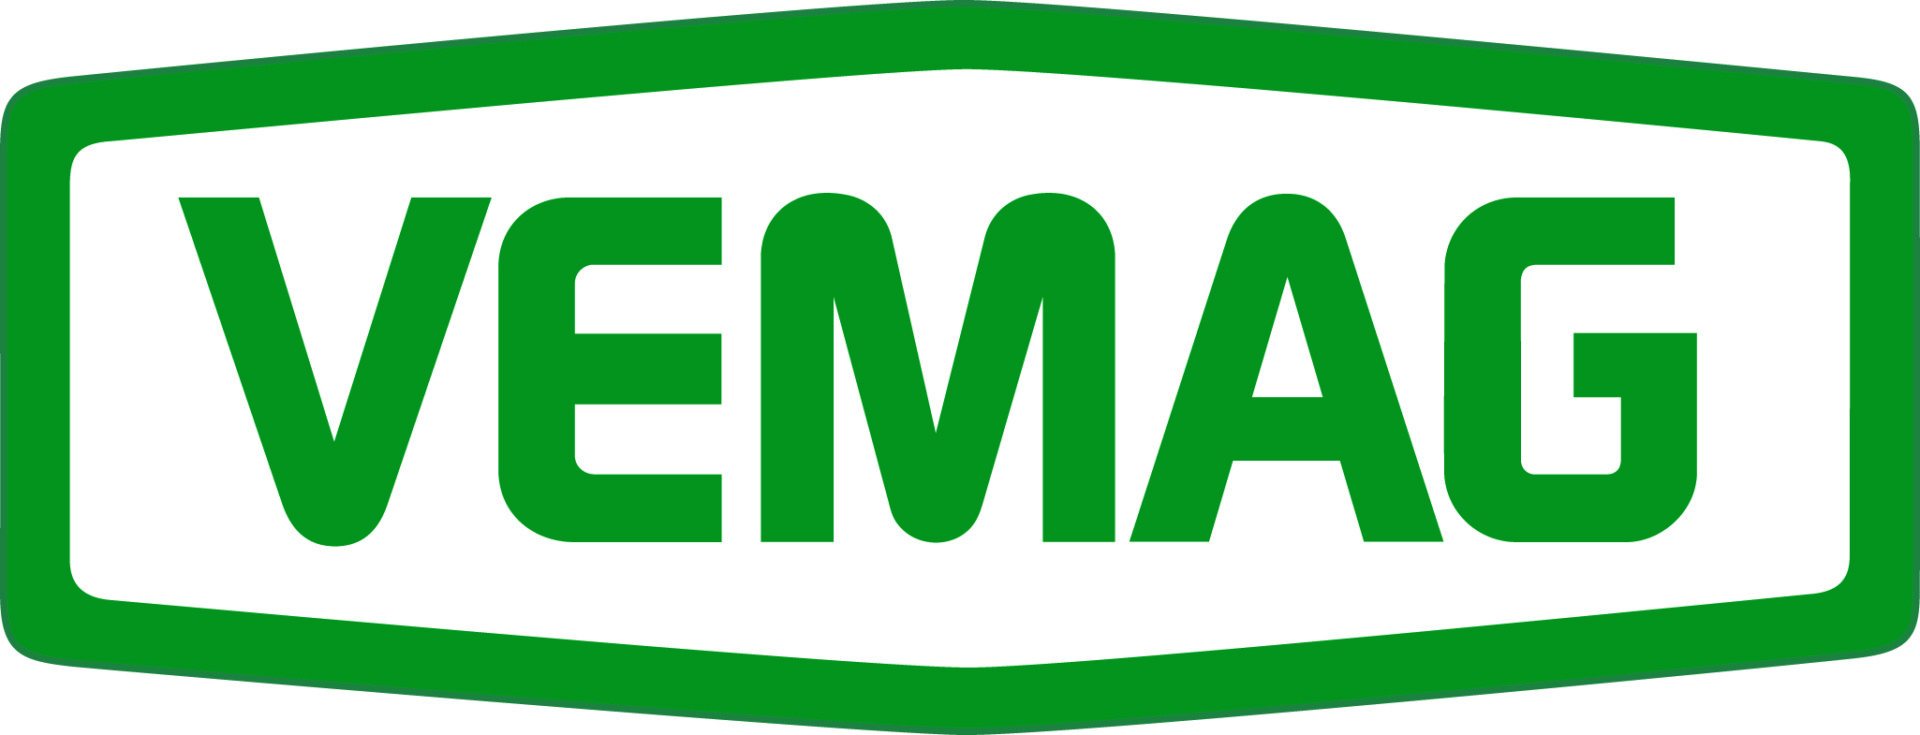 VEMAG_Logo